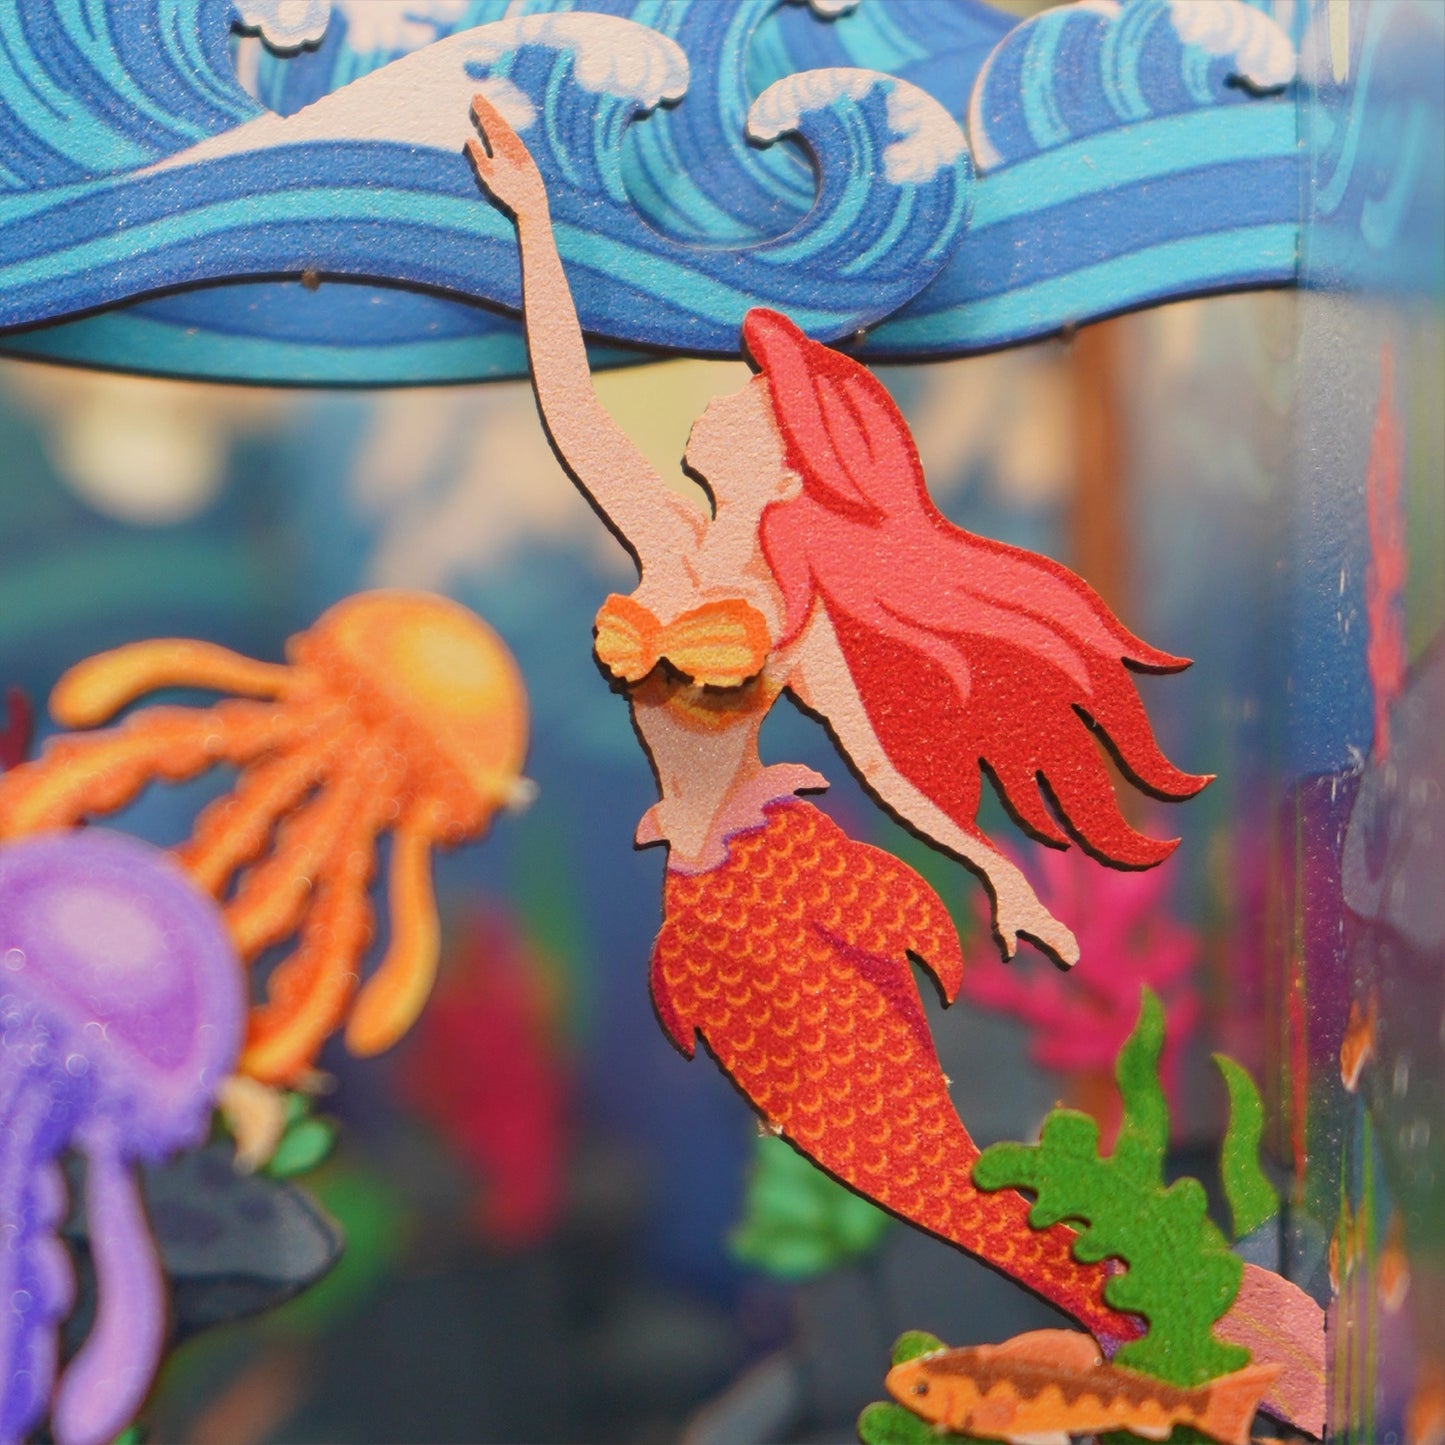 Diy Miniature House Book Nook Kit: Mermaid Story